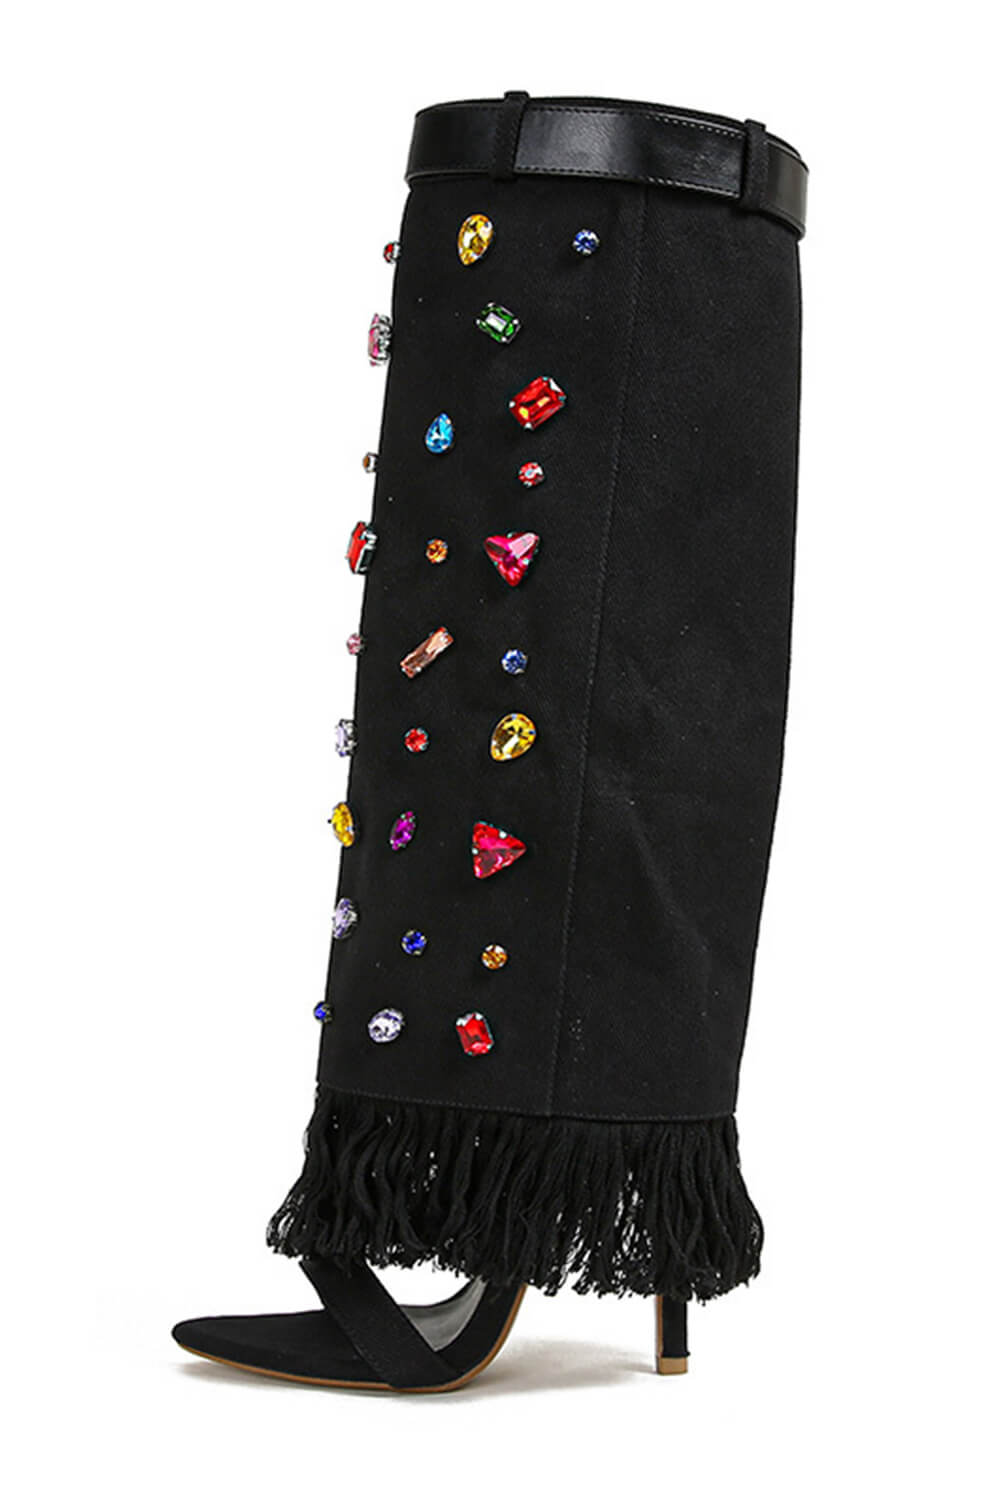 Denim Gem Embellished Fringe Folded Knee High Stiletto Boots - Black